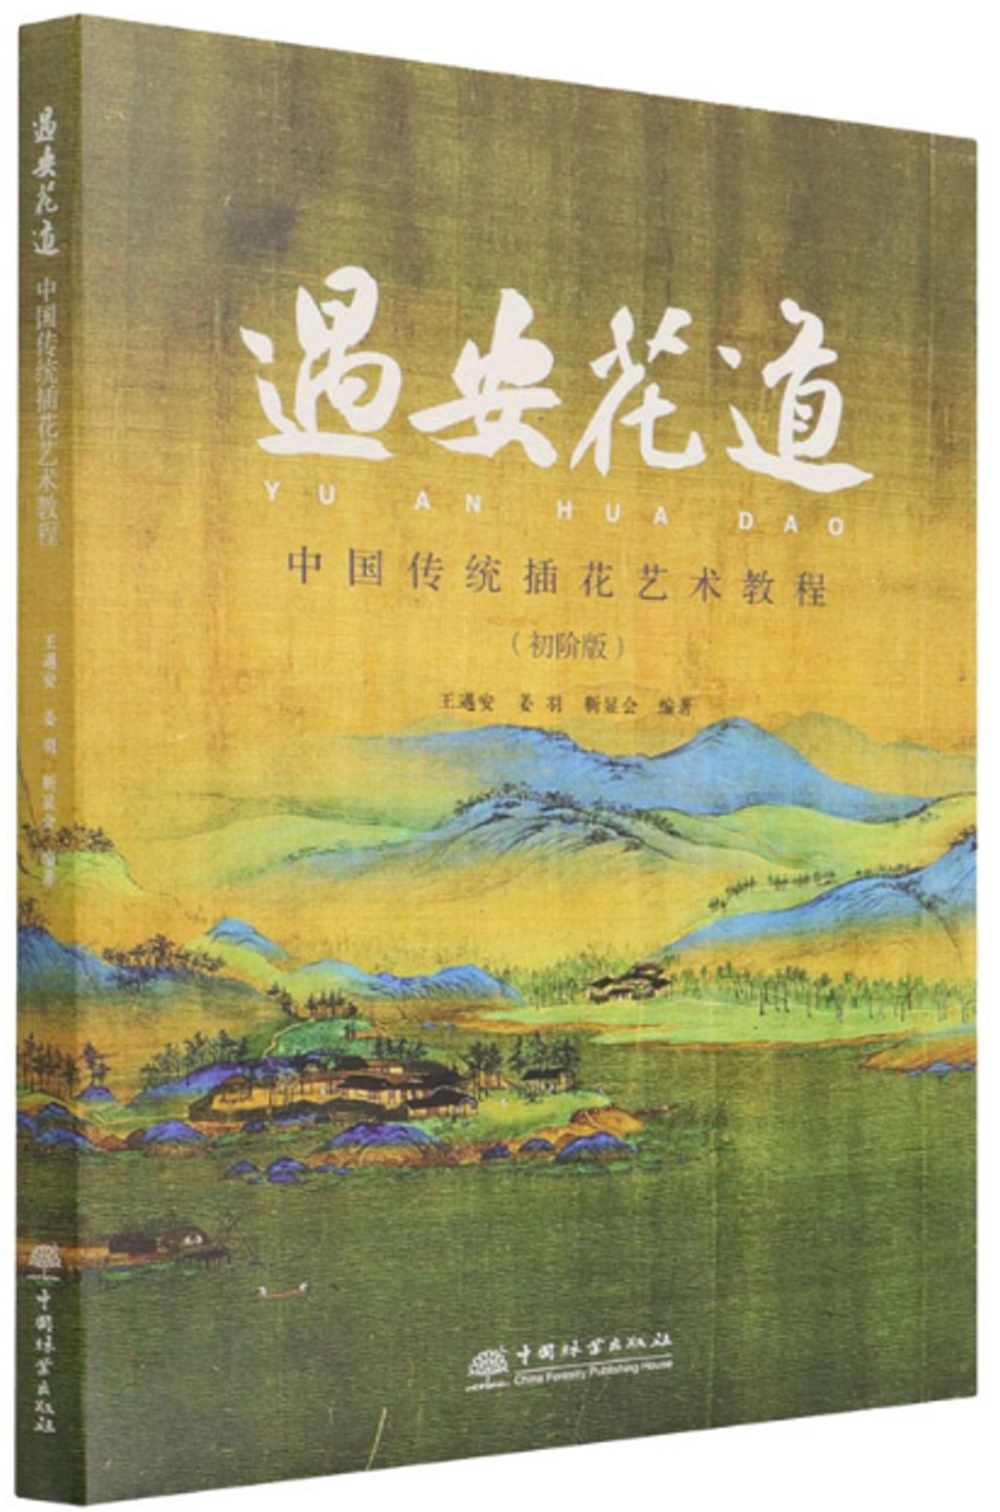 遇安花道：中國傳統插花藝術教程(初階版)